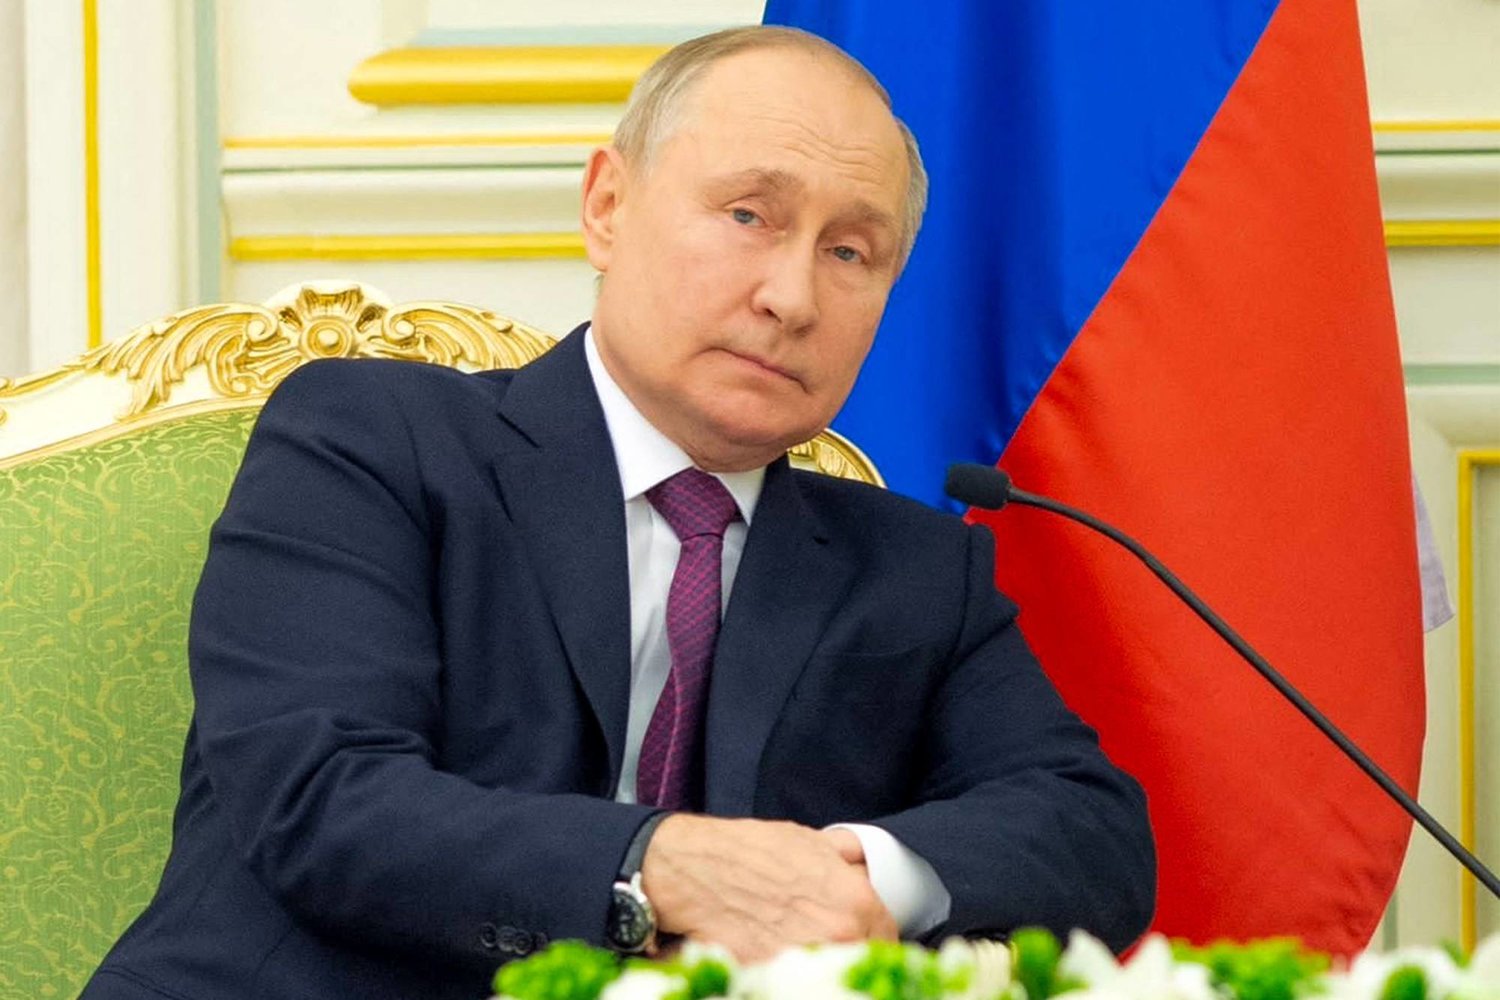 دام برس : دام برس | تنصيب بوتين رئيساً لروسياً لولاية جديدة.. وريابكوف يفسر سبب دعوة الدول غير الصديقة لحضور المراسم